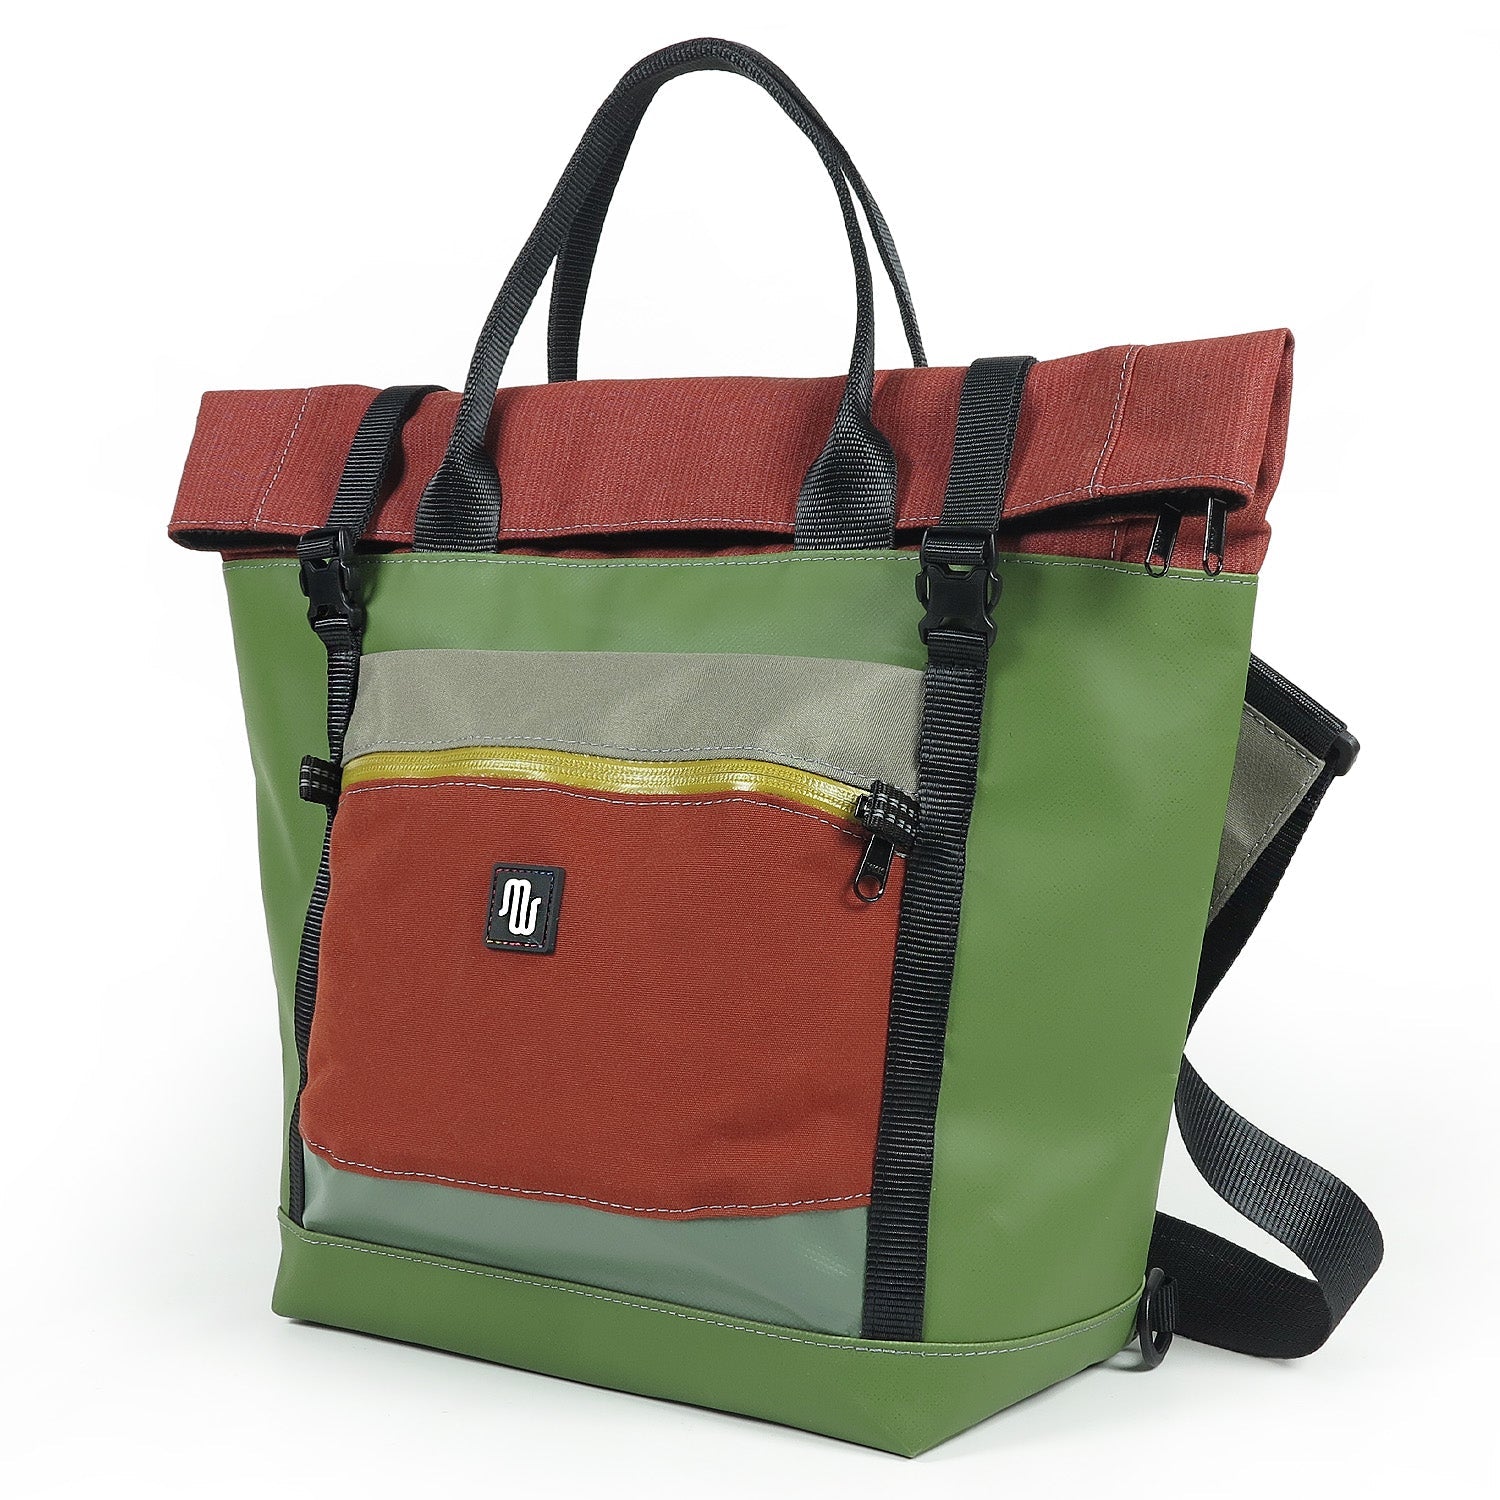 TAKE No. 003 - Shoulder bag - medencebag